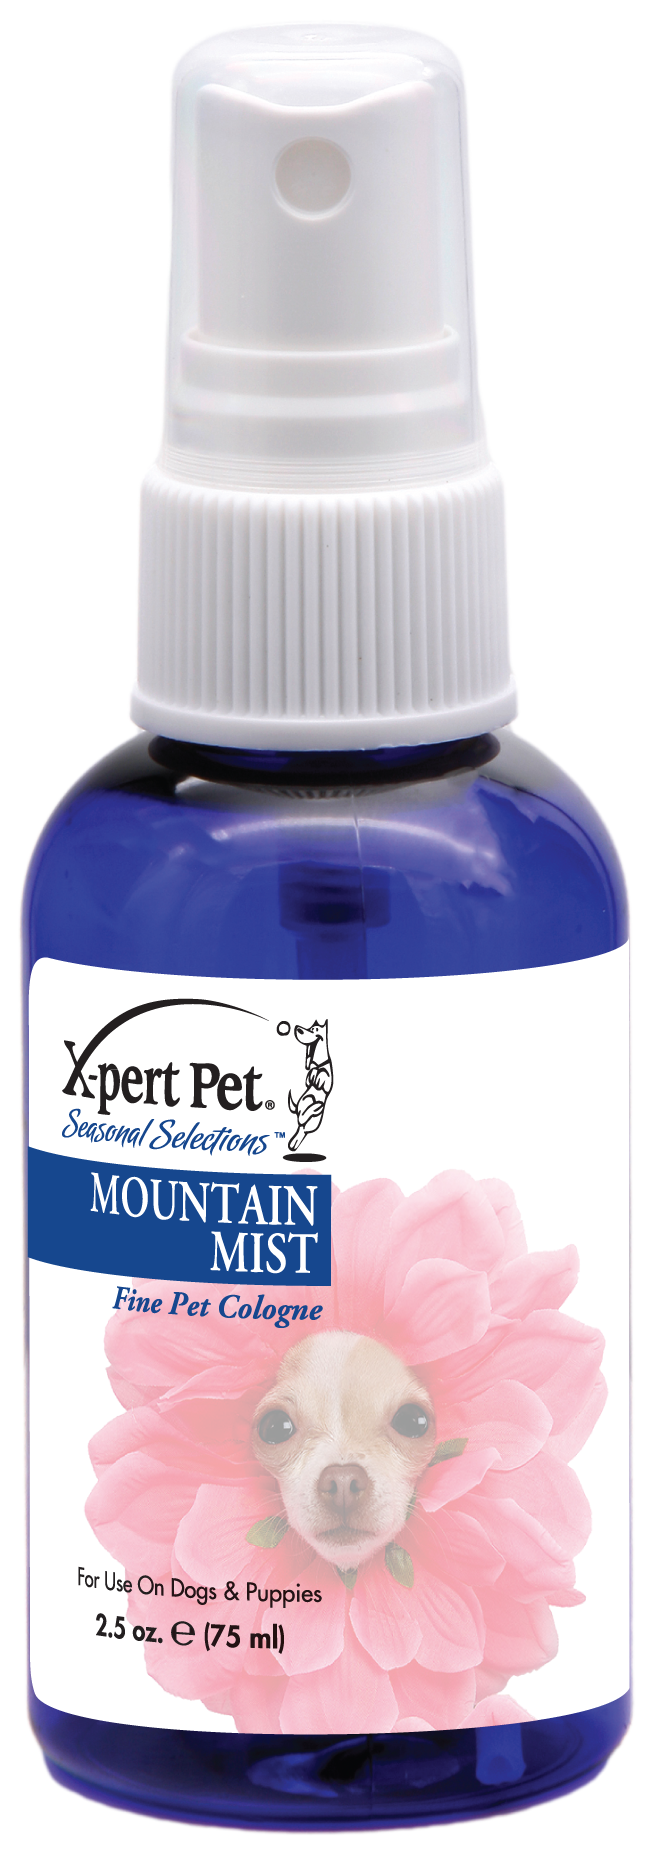 Mountain Mist Pet Cologne | X-Pert Pet®